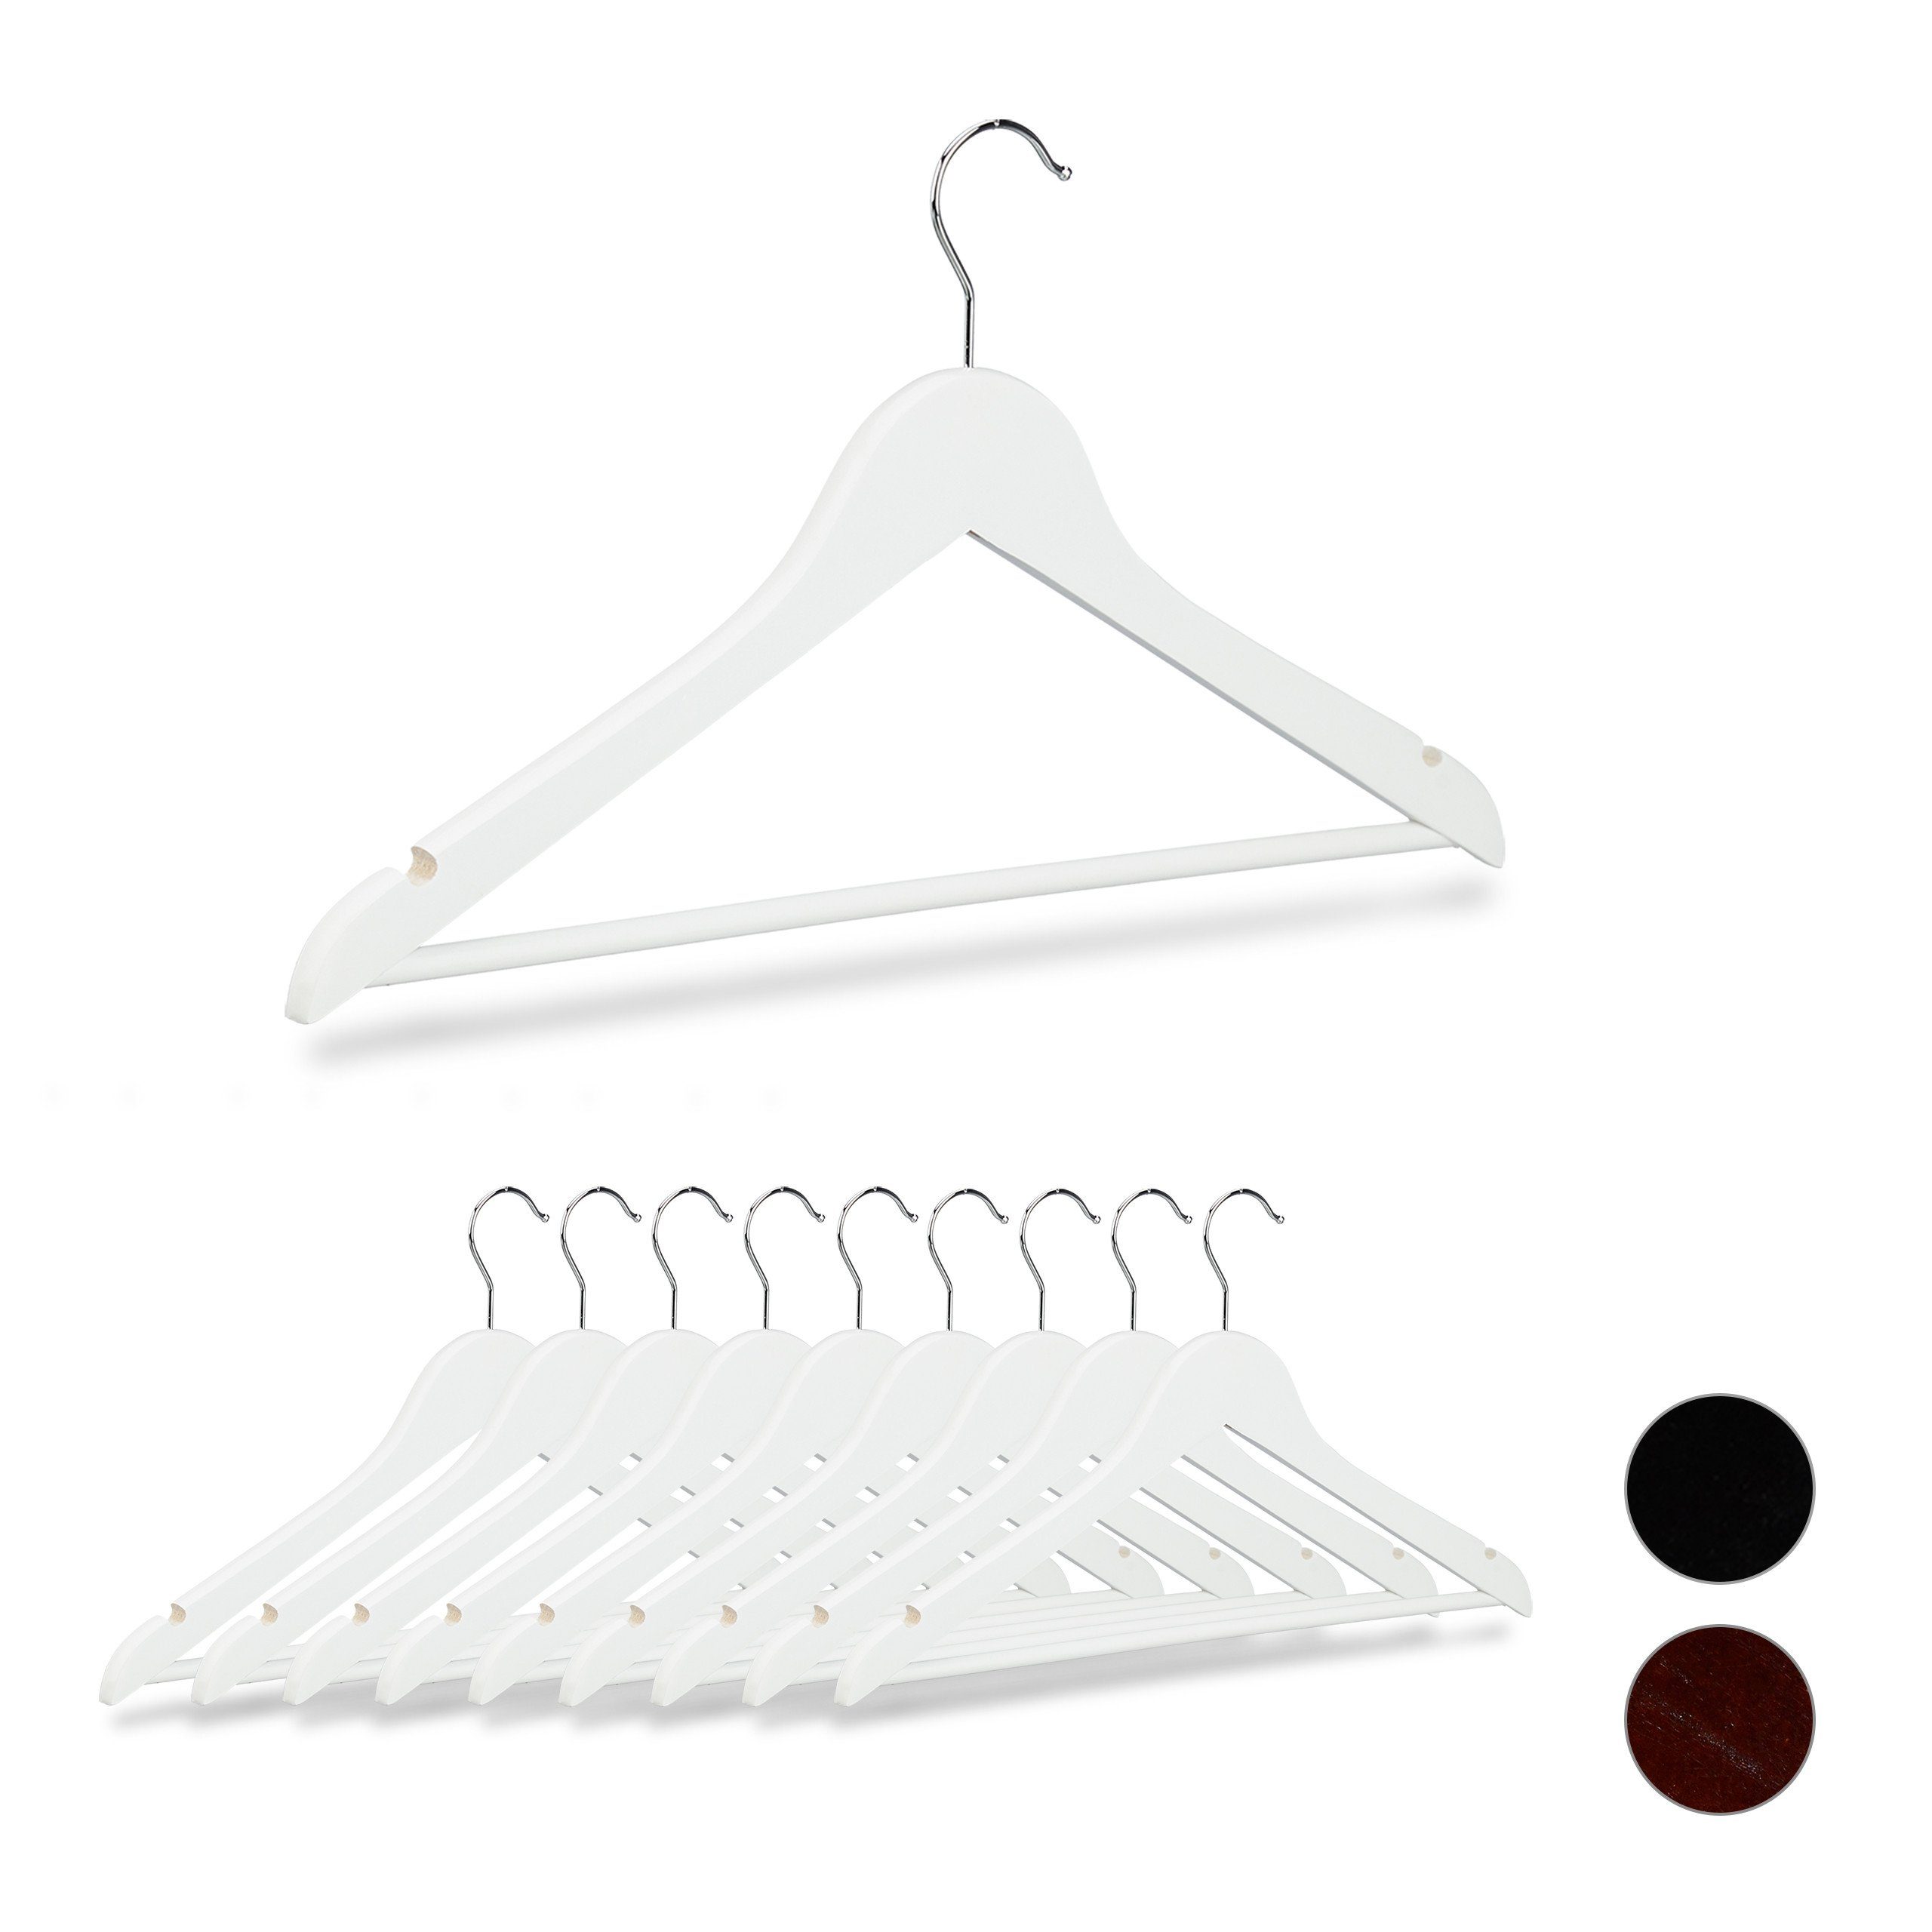 Silber-Galvanik Aufhänger, Kleiderbügel Kunststoff-Beschichtung, Silber  Kunststoff Kleiderbügel für Hemd